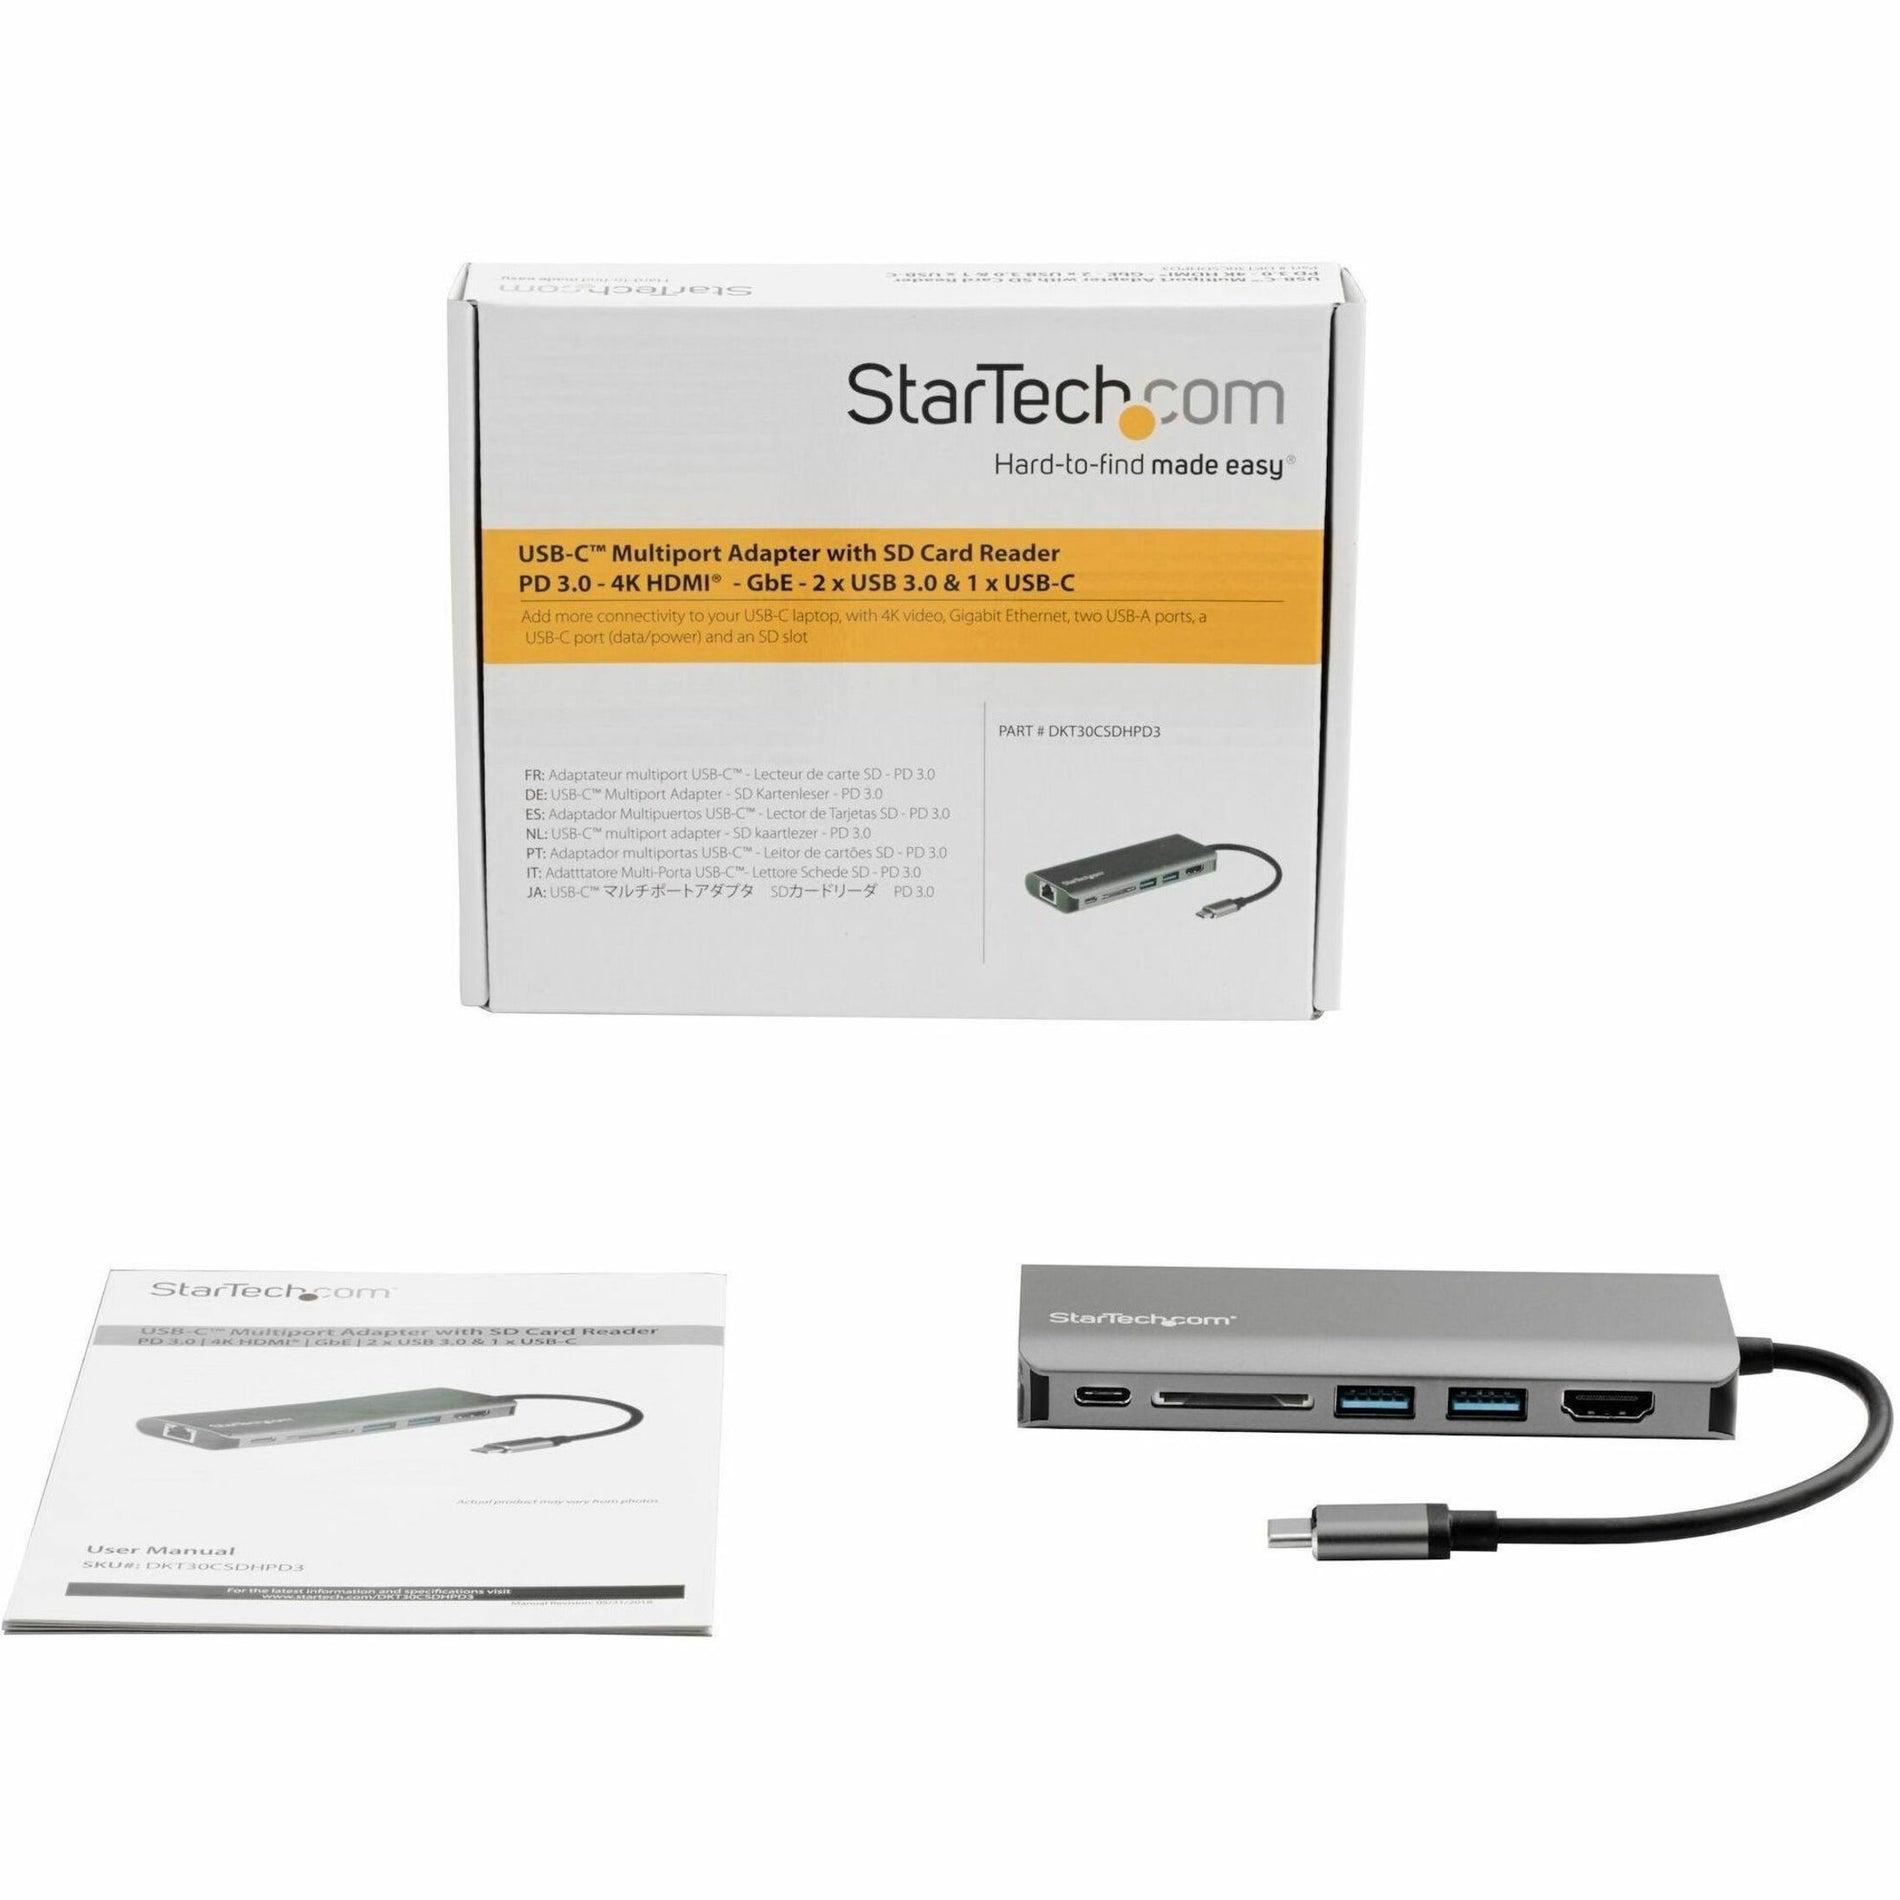 StarTech.com Adaptador multipuerto USB-C DKT30CSDHPD3 con HDMI - Lector de SD - PD 3.0 Pantalla 4K Ethernet Gigabit. Marca: StarTech.com.